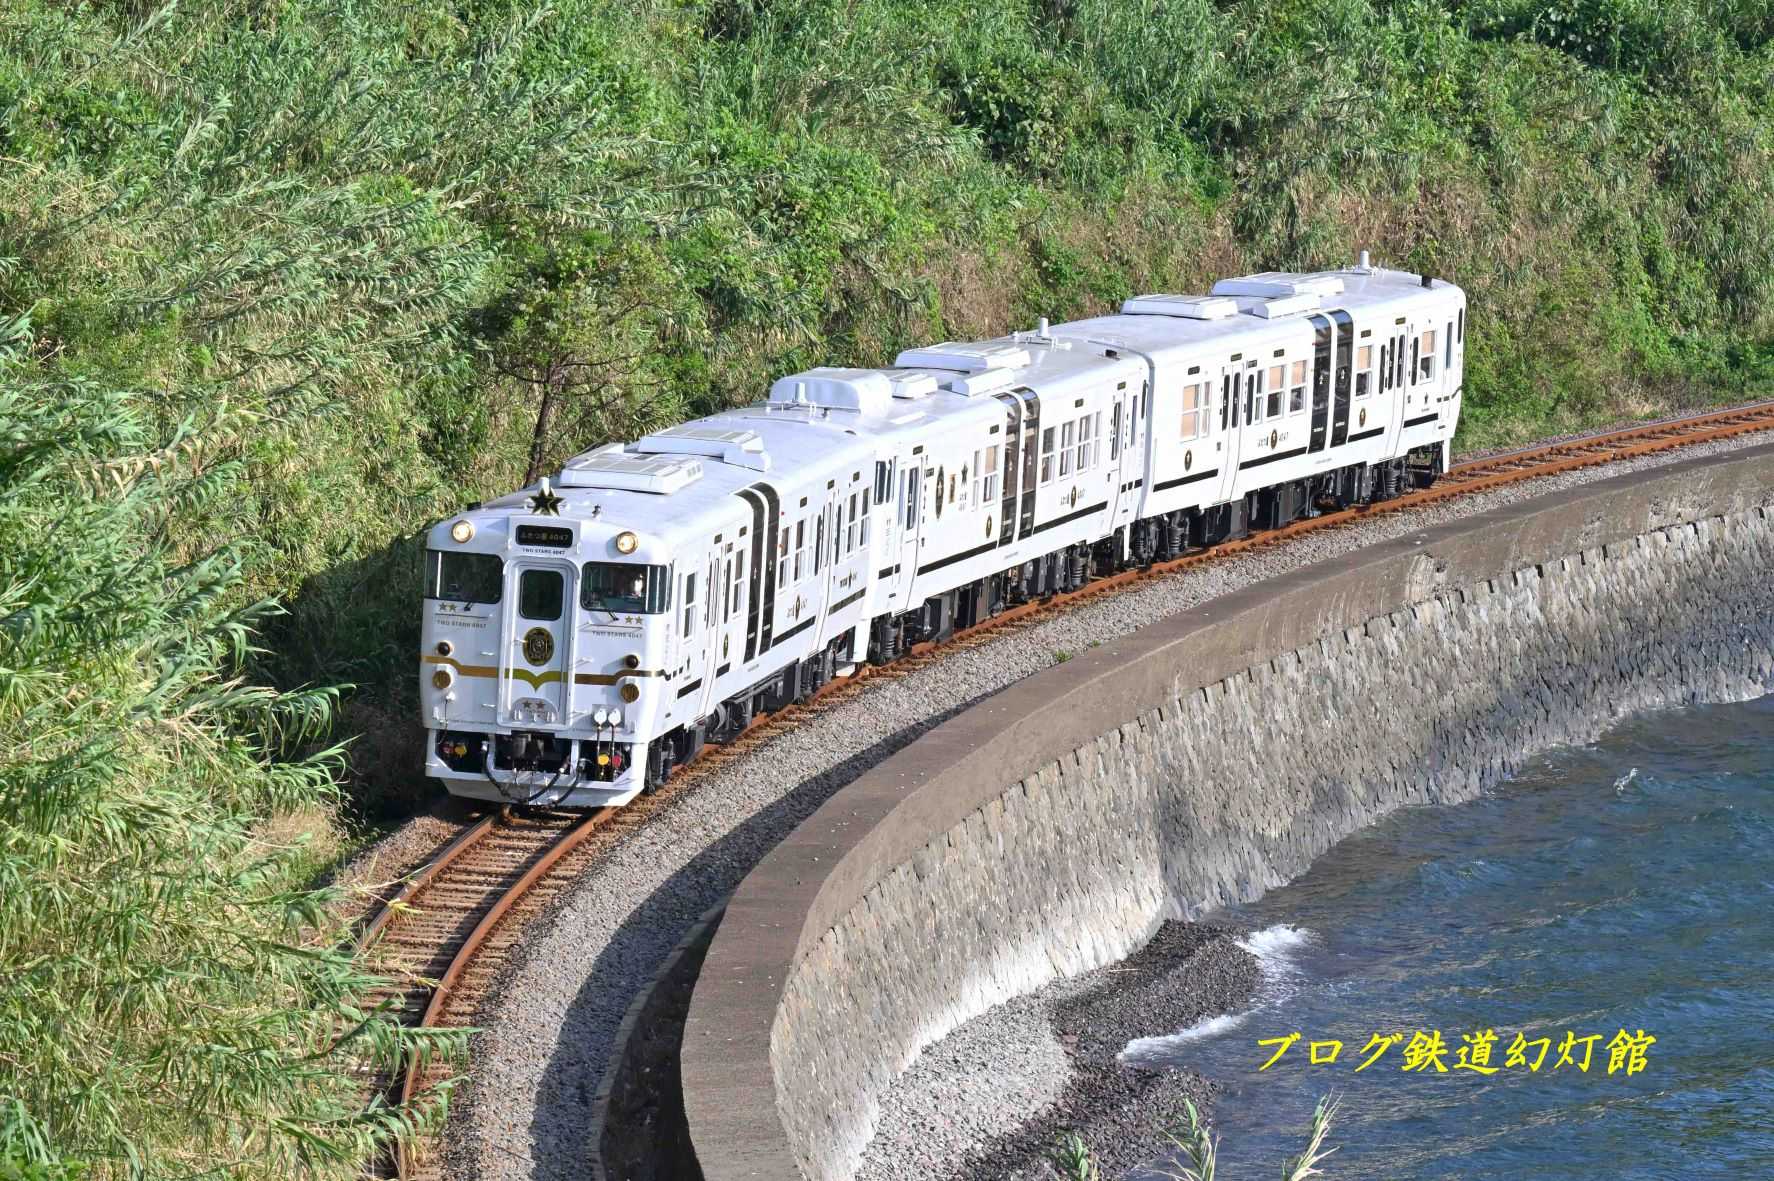 ピカピカの観光列車「ふたつ星4047」 | ブログ「鉄道幻灯館」 - 楽天ブログ